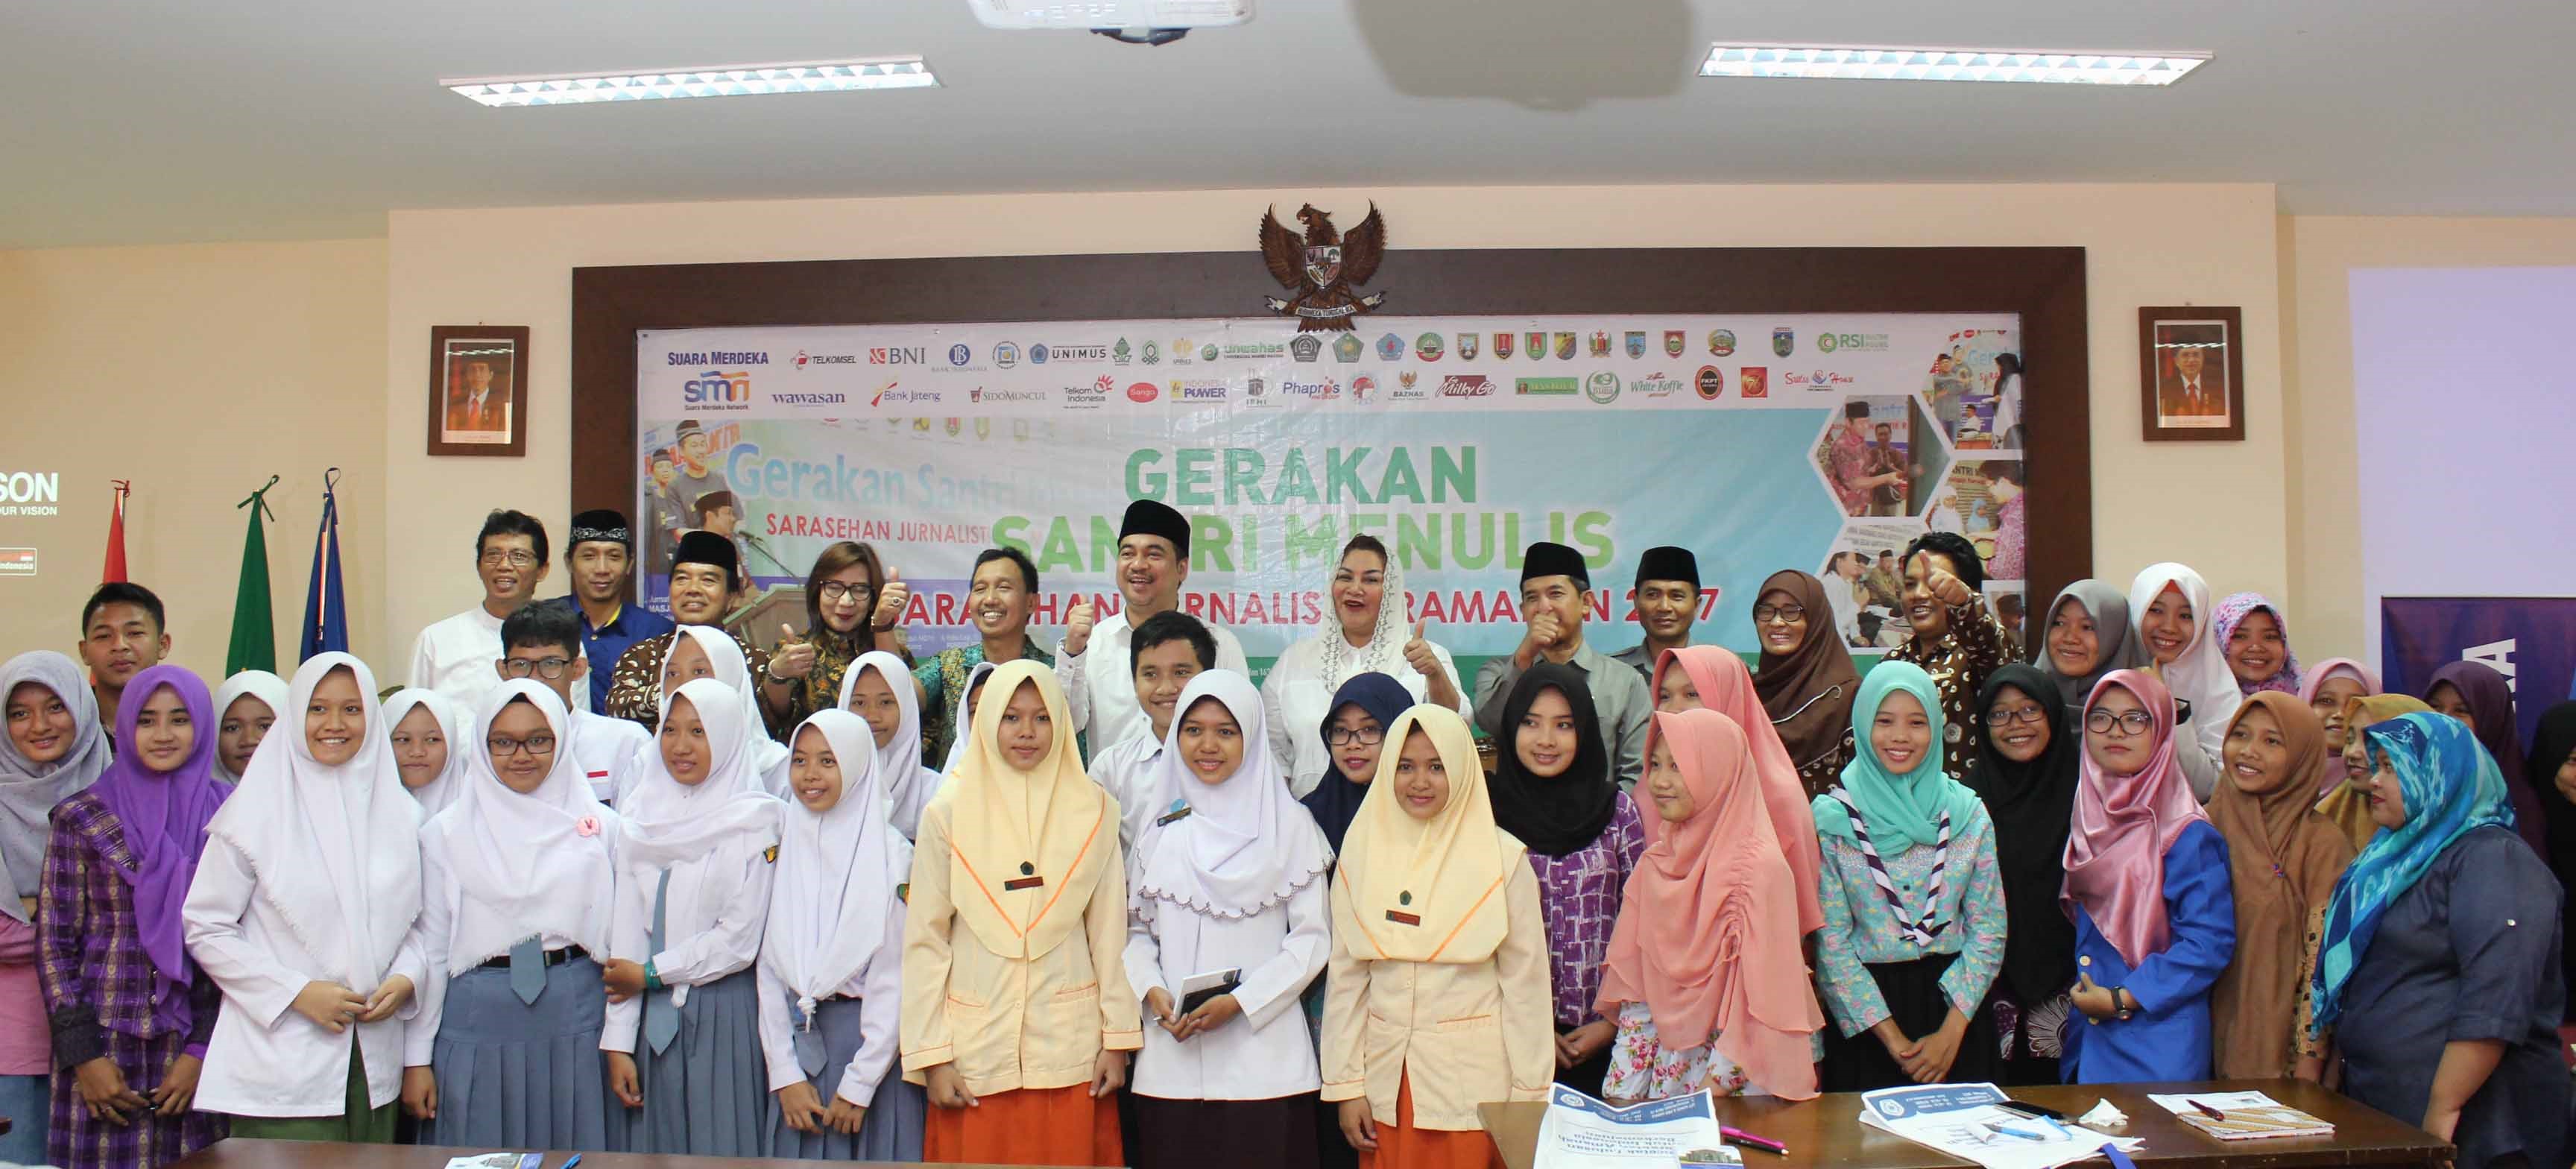 Peserta Sarasehan Jurnalistik Ramadhan berfoto bersama Wakil Walikota Semarang, CEO Suara Merdeka dan Rektor Unimus